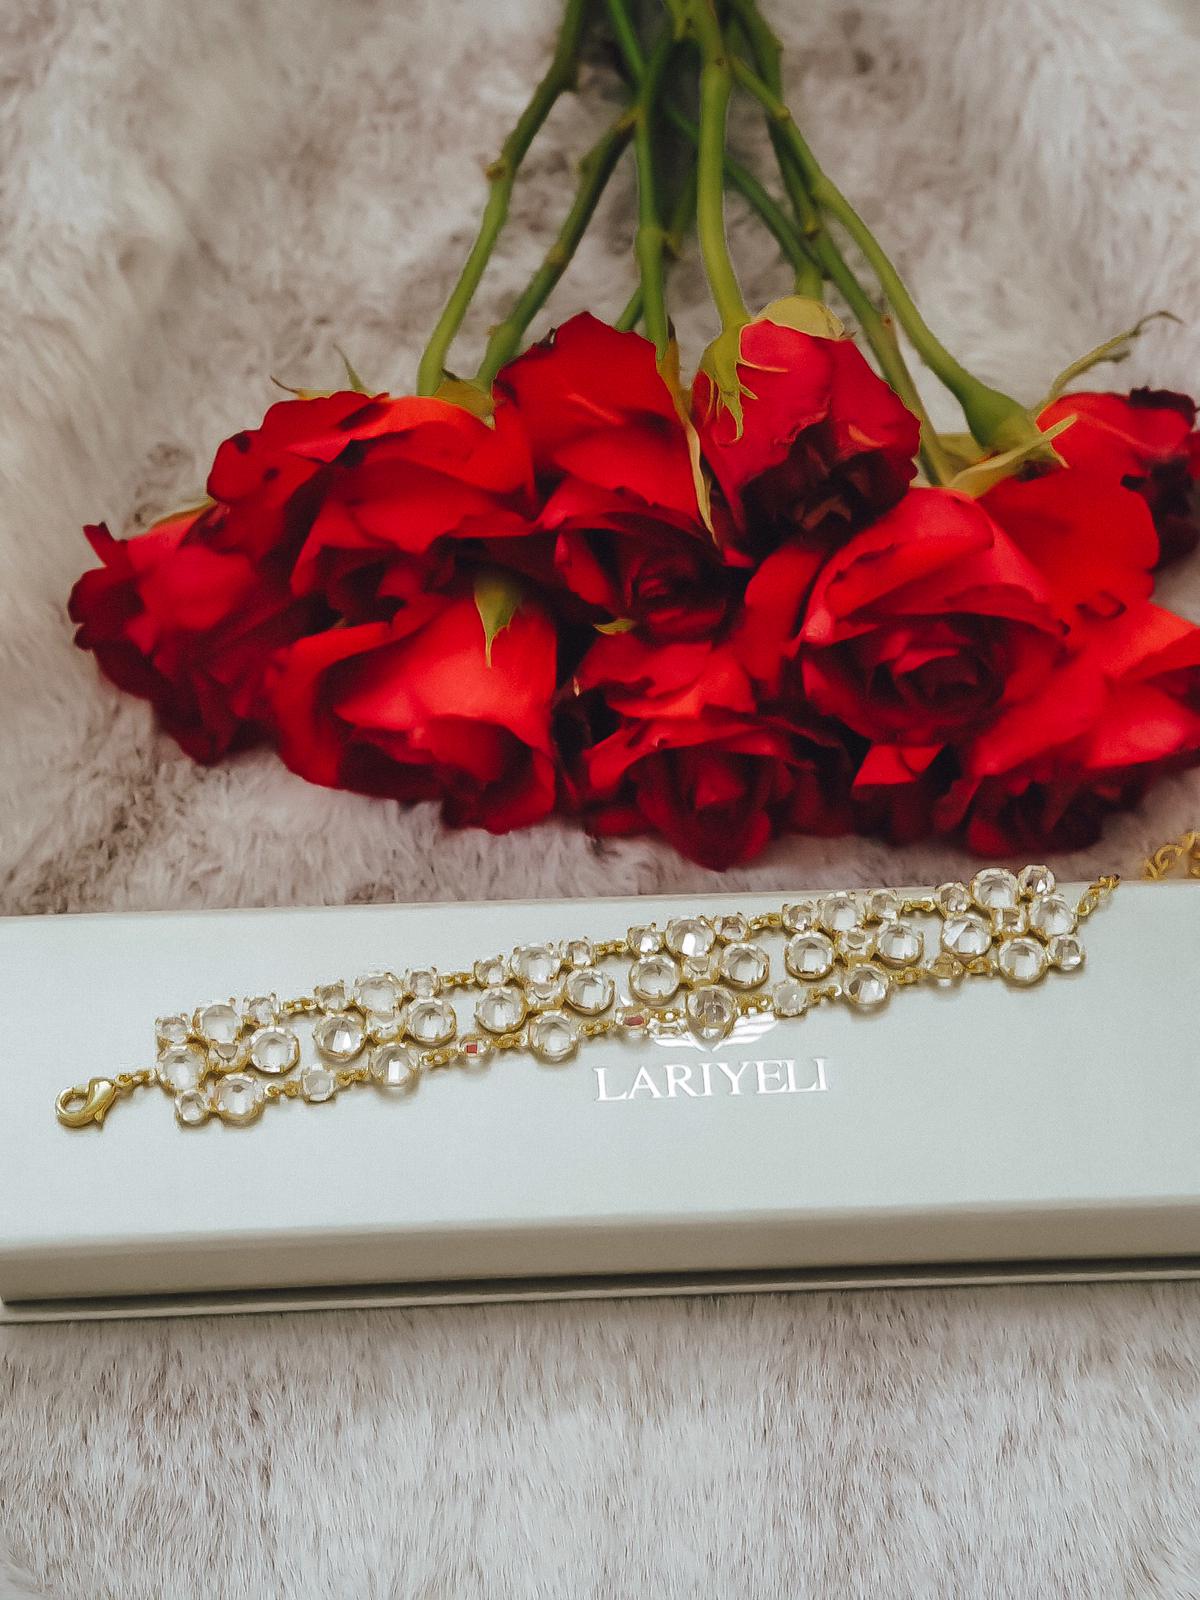 Lariyeli ist eine vegane Marke für luxuriösen Schmuck & Accessoires. Ich zeige das in Handarbeit gefertigte top Crystal Choker Armband auf dem Fashion Blog.